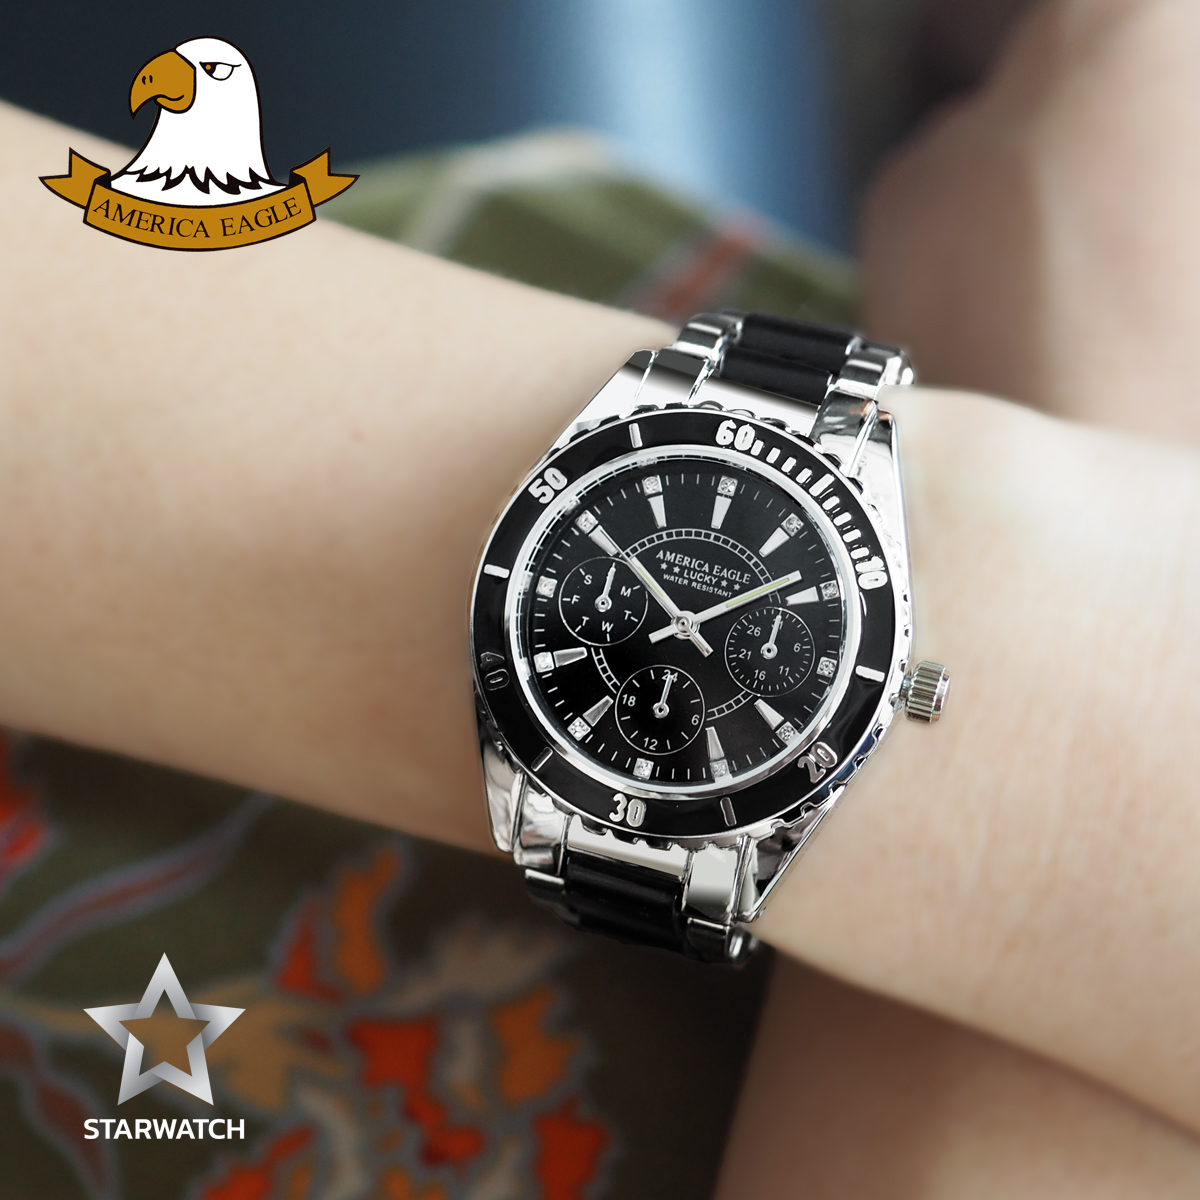 รายละเอียดเพิ่มเติมเกี่ยวกับ AMERICA EAGLE นาฬิกาข้อมือผู้หญิง สายสแตนเลส รุ่น AE004L - Silver / Black